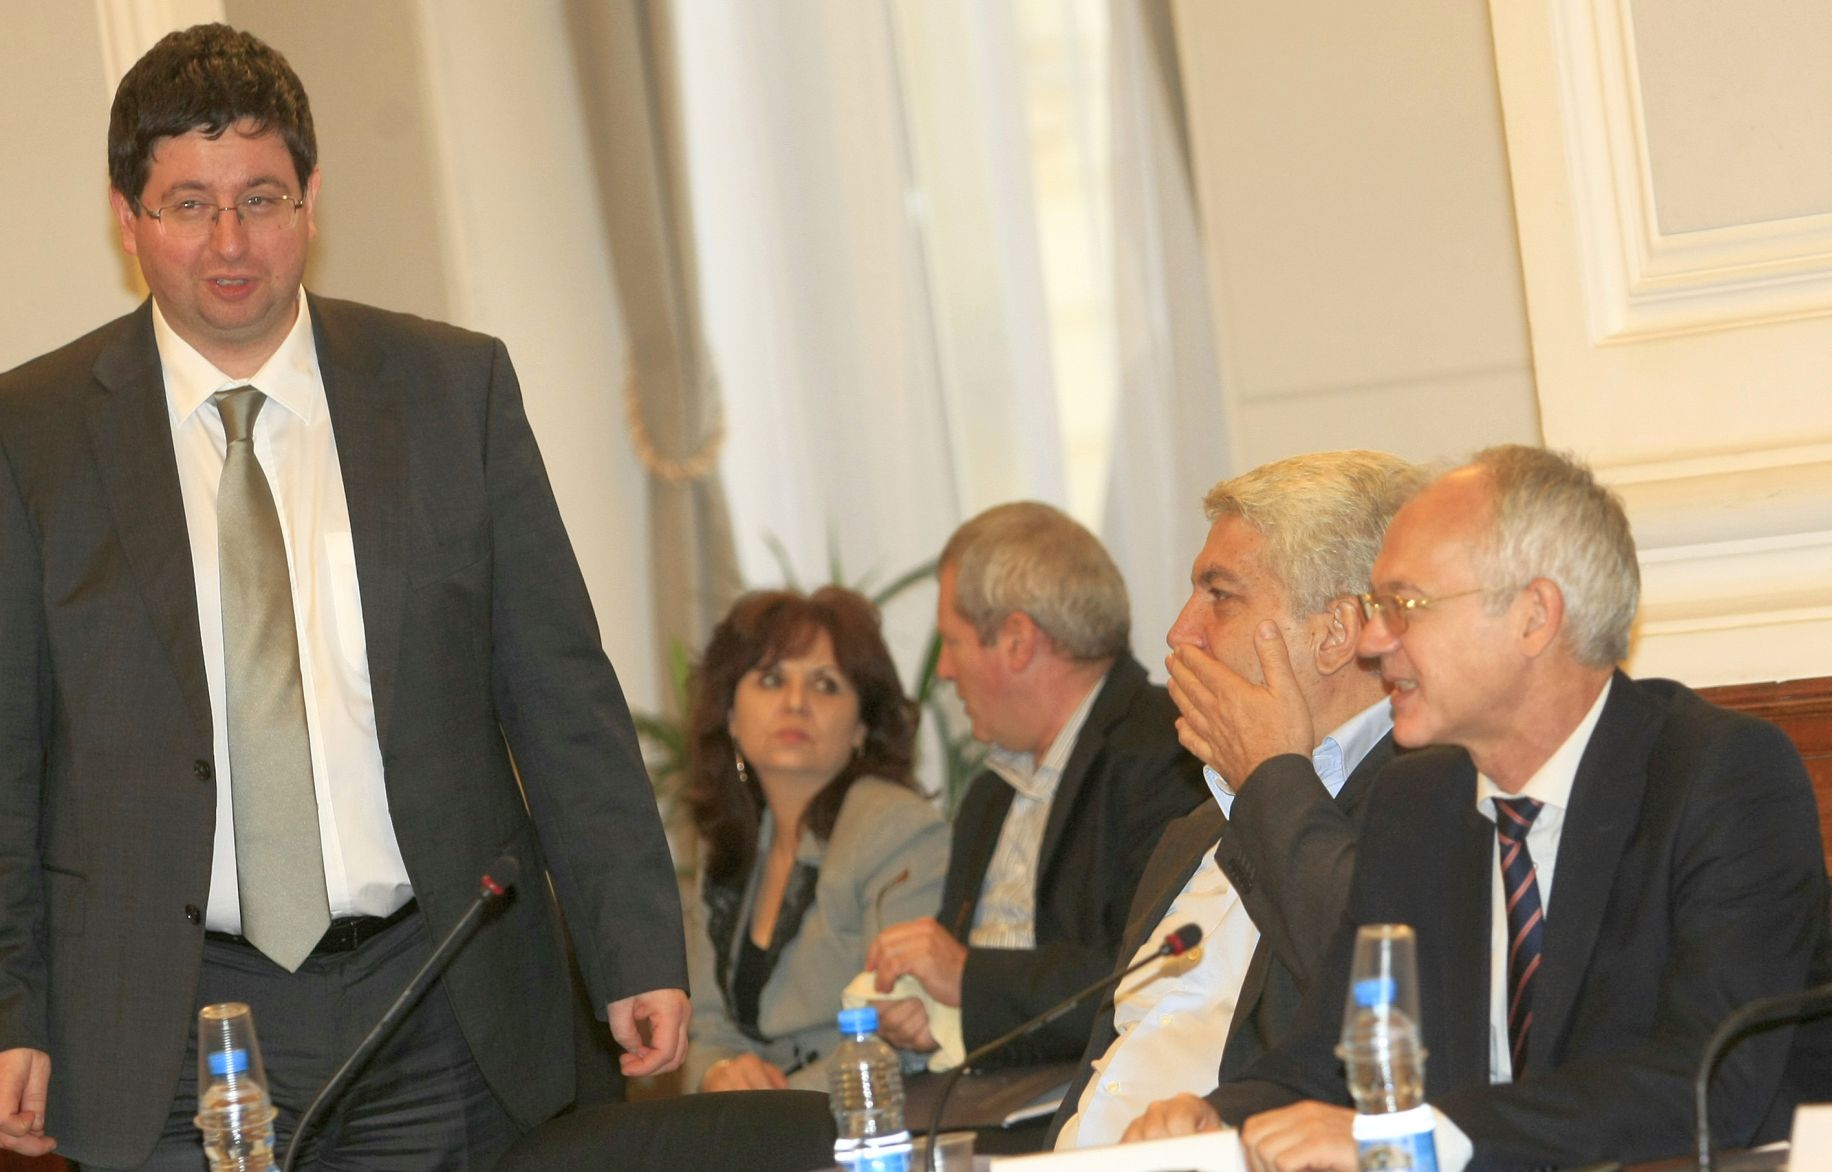 Петър Чобанов заяви относно съкращенията в администрацията, че това няма да става механично